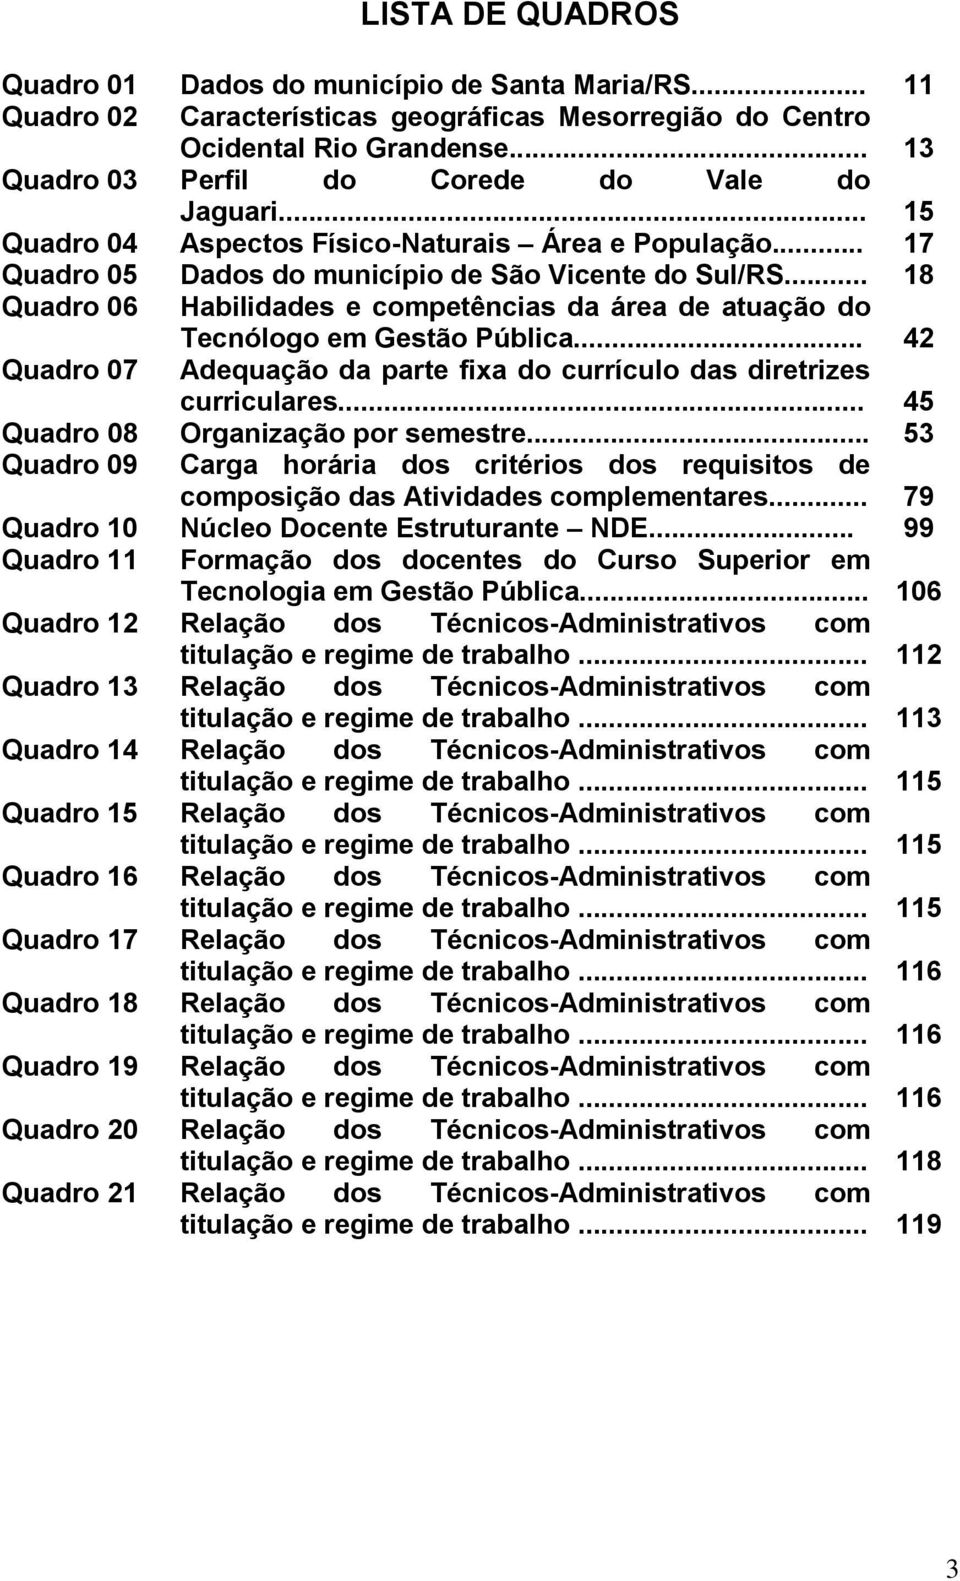 .. 18 Quadro 06 Habilidades e competências da área de atuação do Tecnólogo em Gestão Pública... 42 Quadro 07 Adequação da parte fixa do currículo das diretrizes Quadro 08 Quadro 09 curriculares.